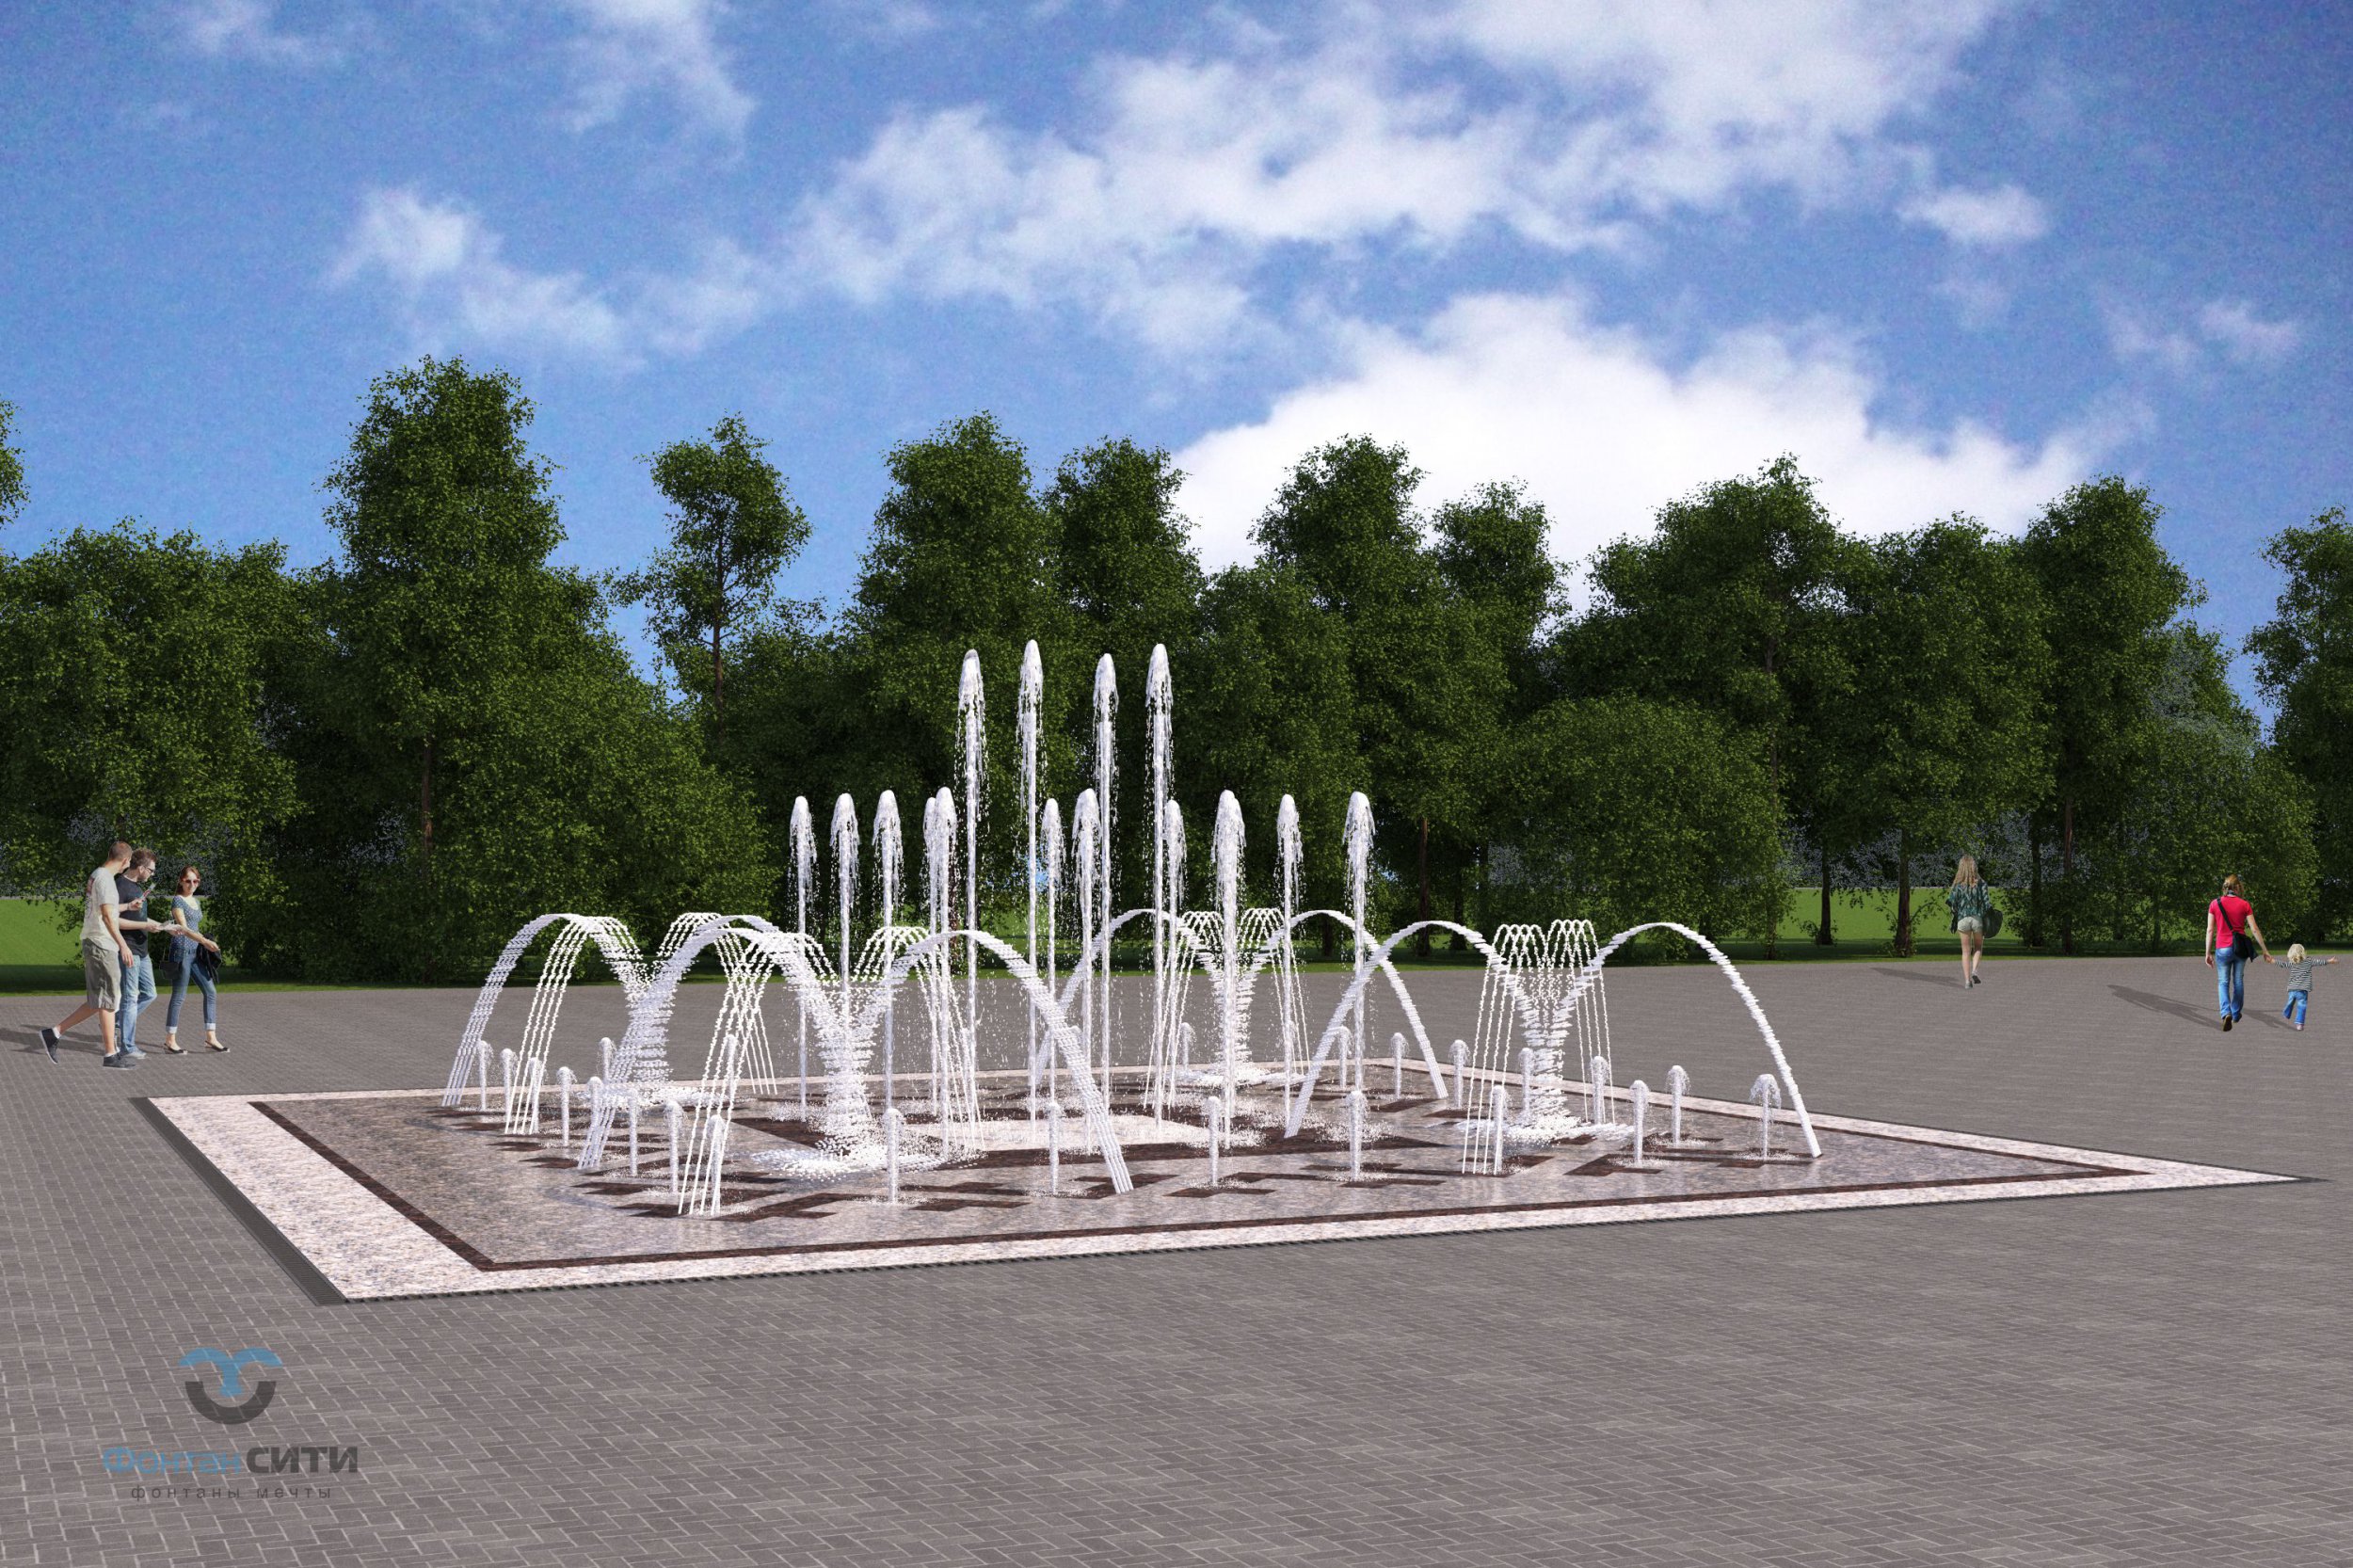 Проект Проект реконструкции фонтанов г. Ухта Фонтан СИТИ Тел: 8-800-234-5405